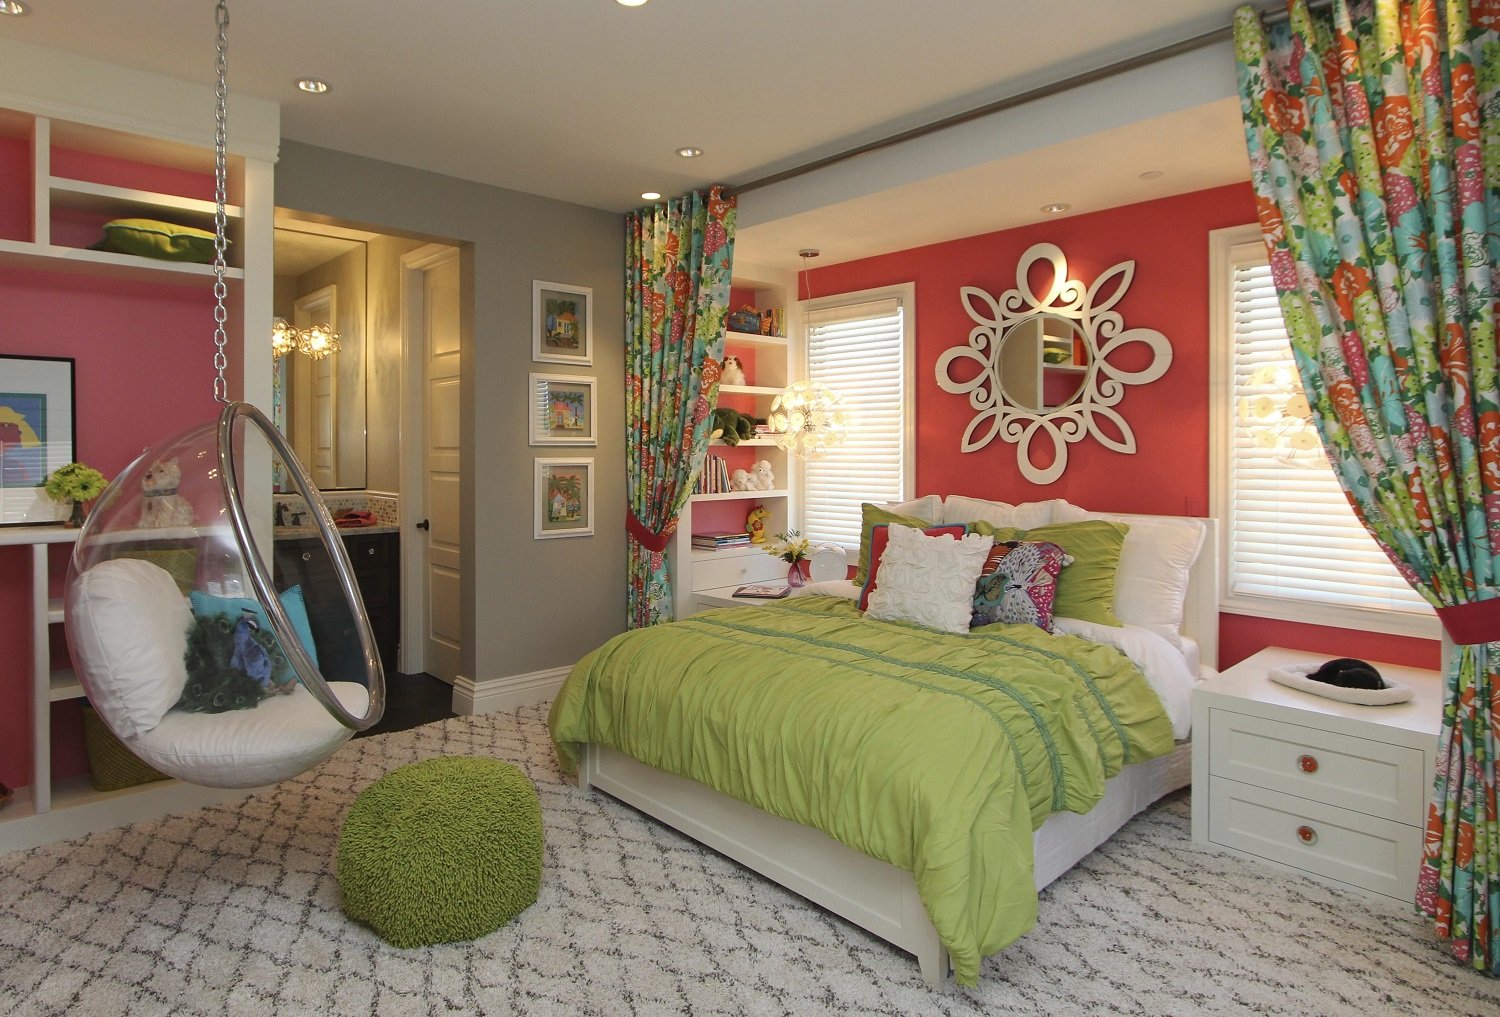 Комната для девочки: дизайн интерьера детской спальни, красивые идеи | дизайн и фото